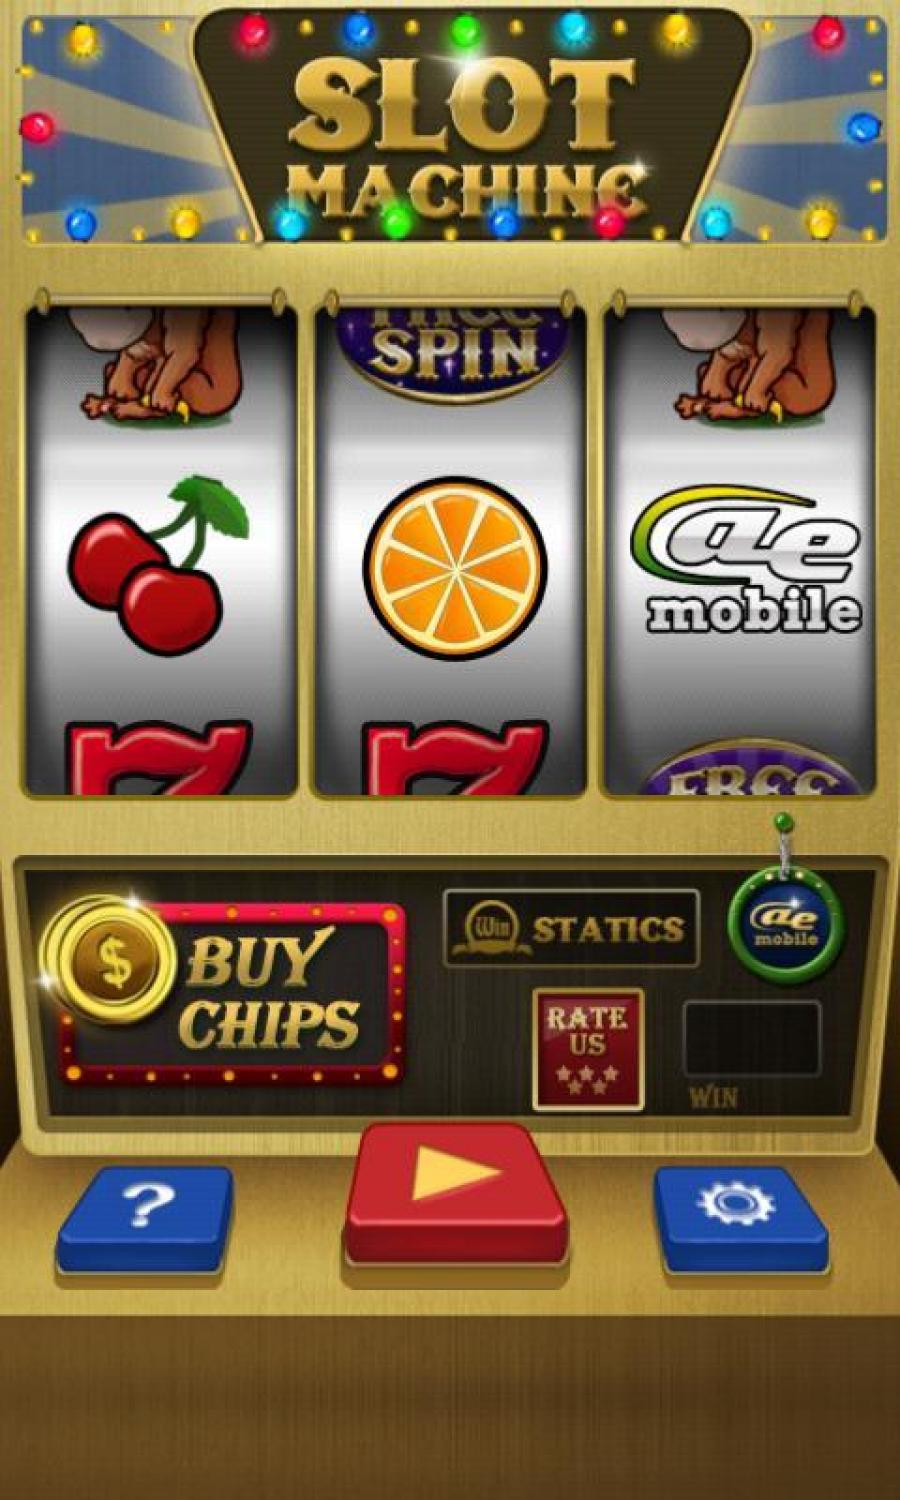 А мобильный телефон игровые автоматы на деньги. Игровой автомат казино. Игровые автоматы на деньги. Игровые аппараты слоты. Игровые автоматы слоты на деньги.